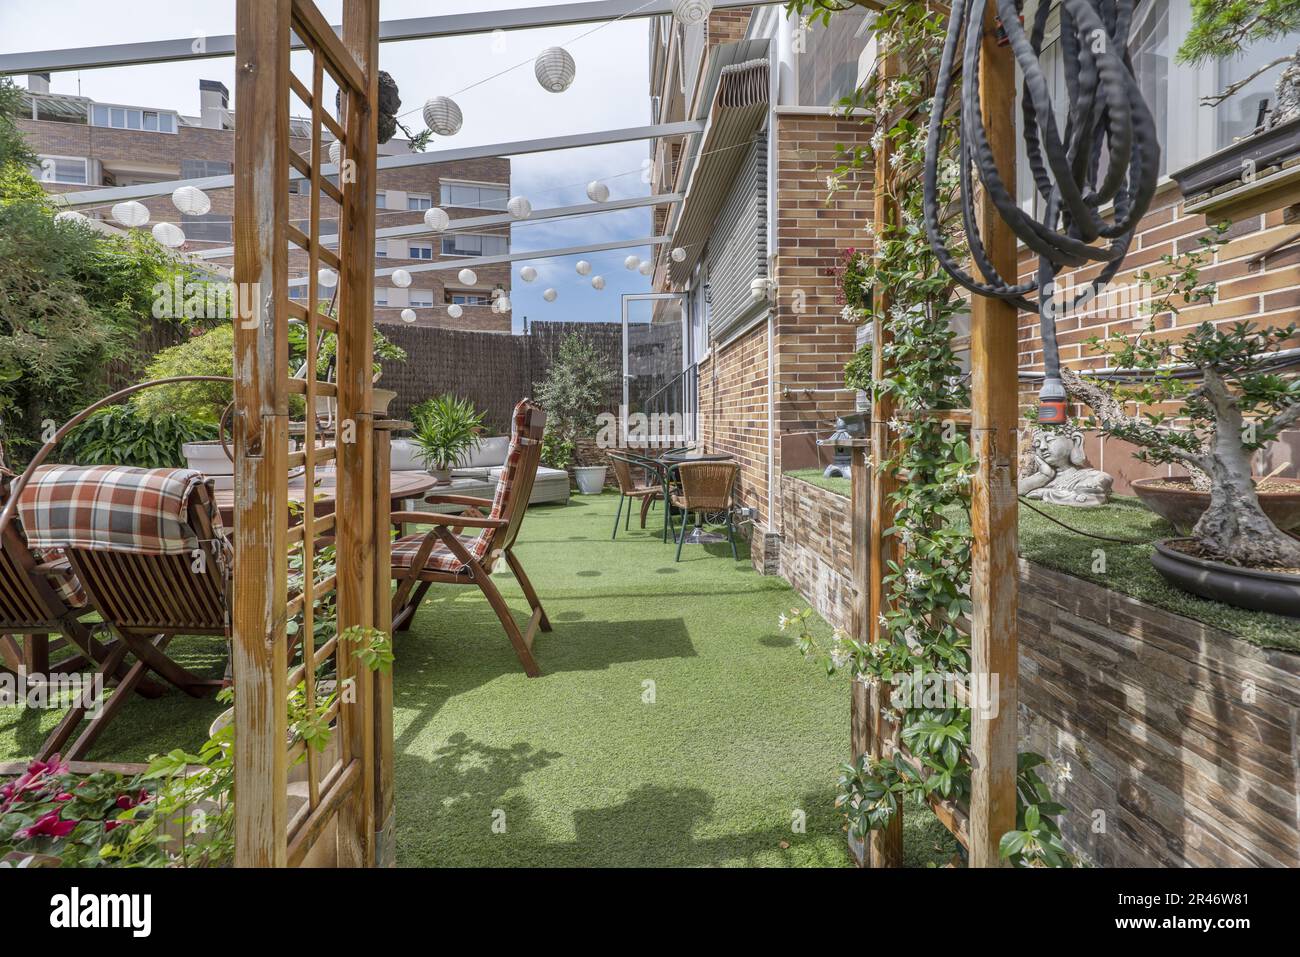 Terrazza di una casa con pavimenti in erba artificiale, tavoli, posti a sedere all'aperto, un sacco di piante e una tenda retrattile al piano terra di una casa Foto Stock